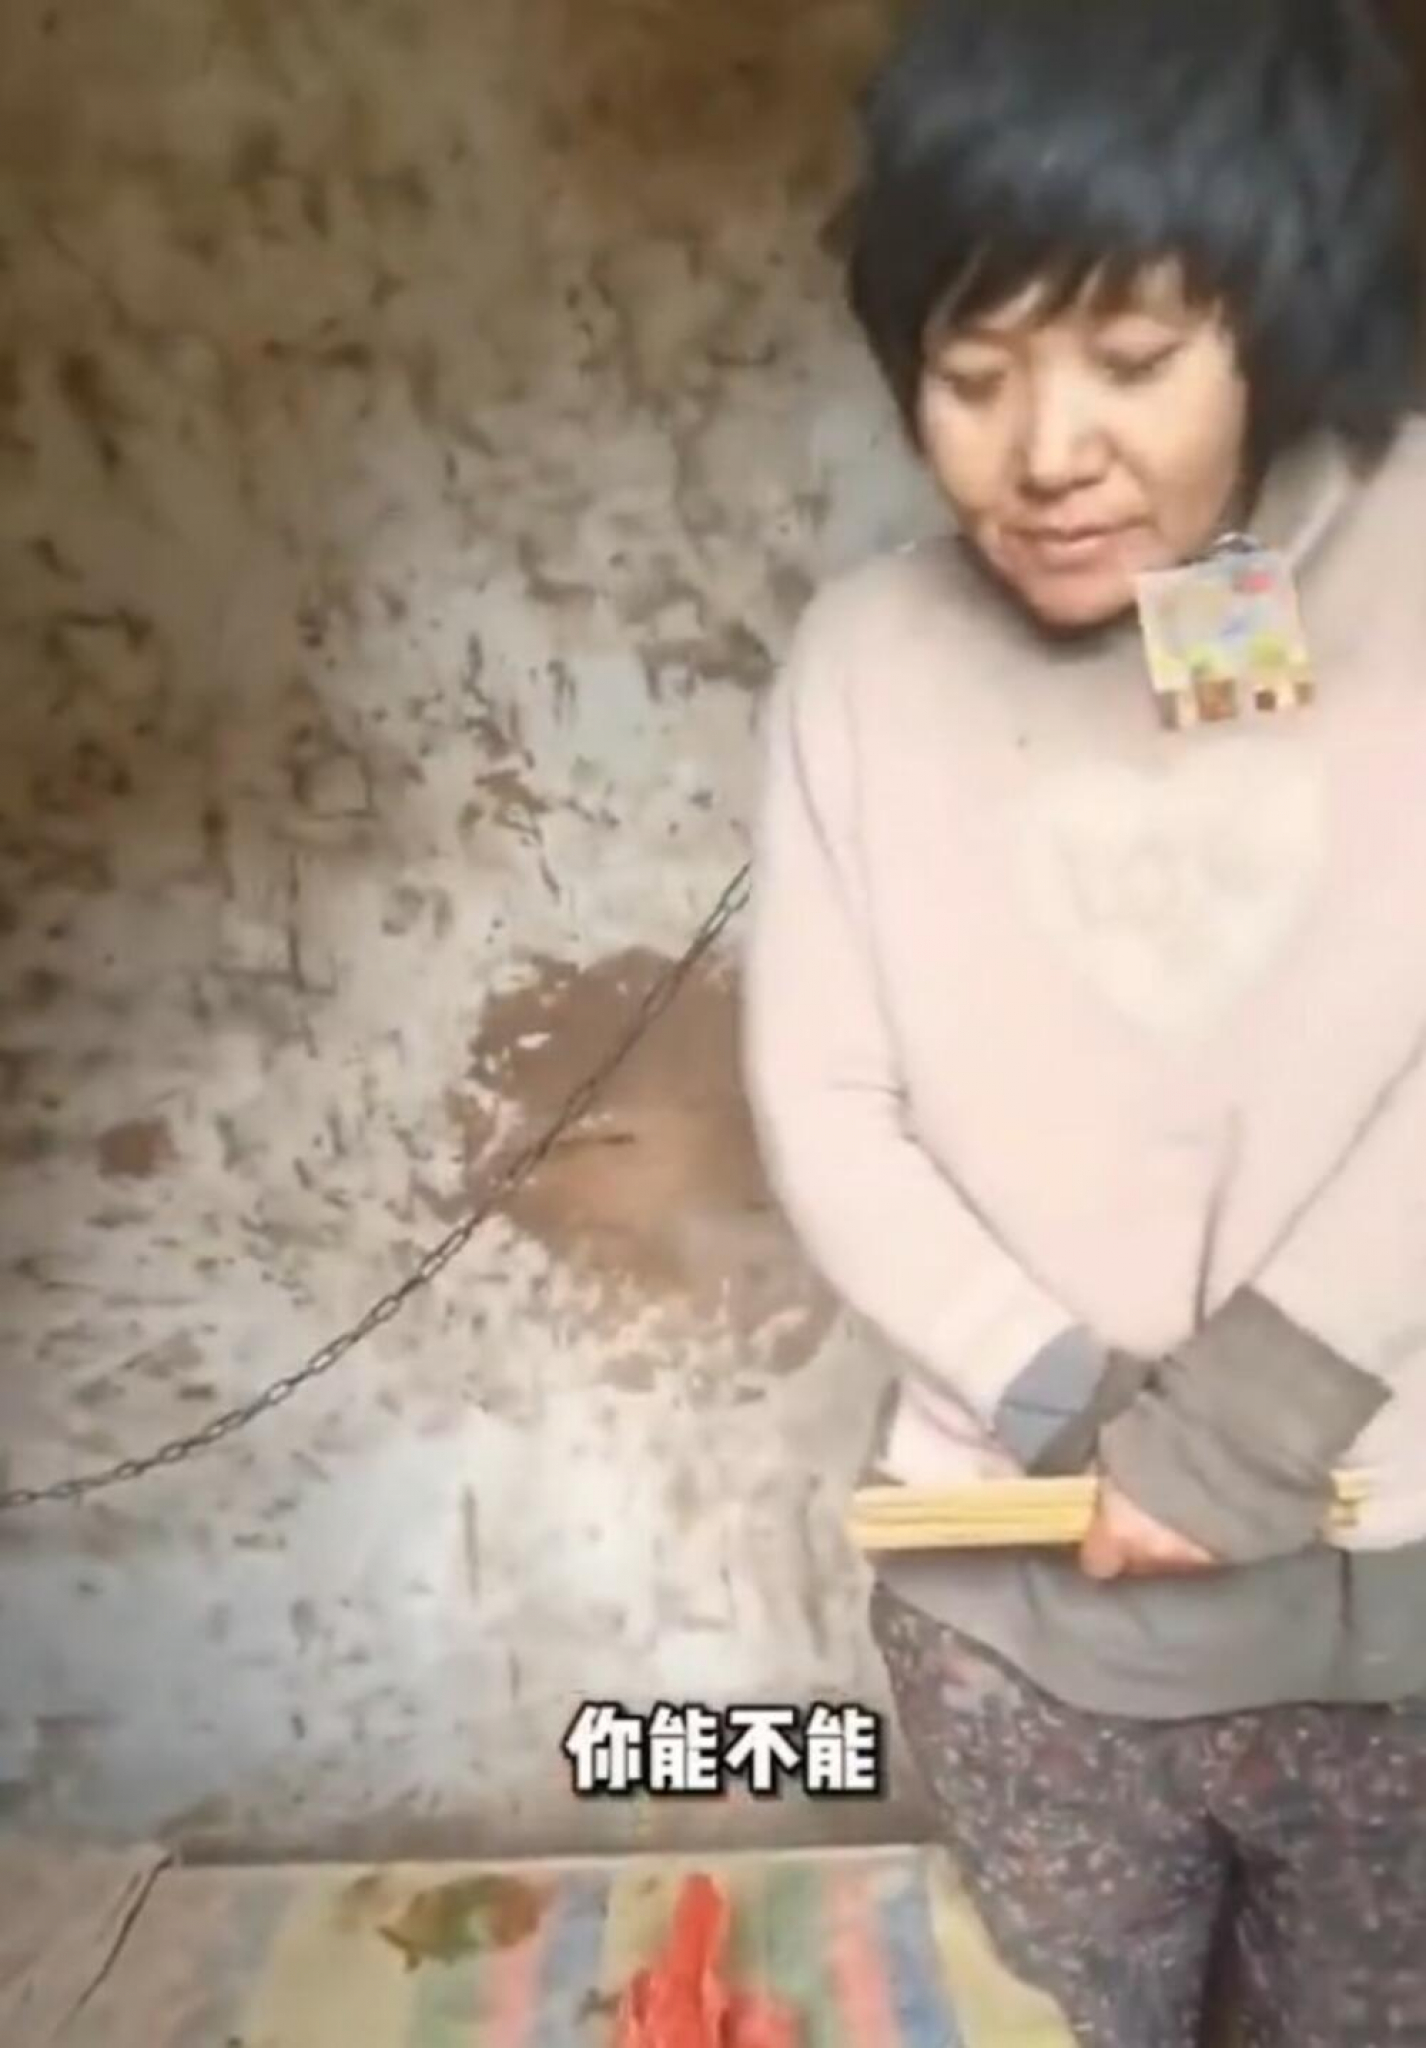 GNEV I ŠOK U KINI! Majka osmoro dece vezana lancima se smrzava u kolibi (VIDEO)